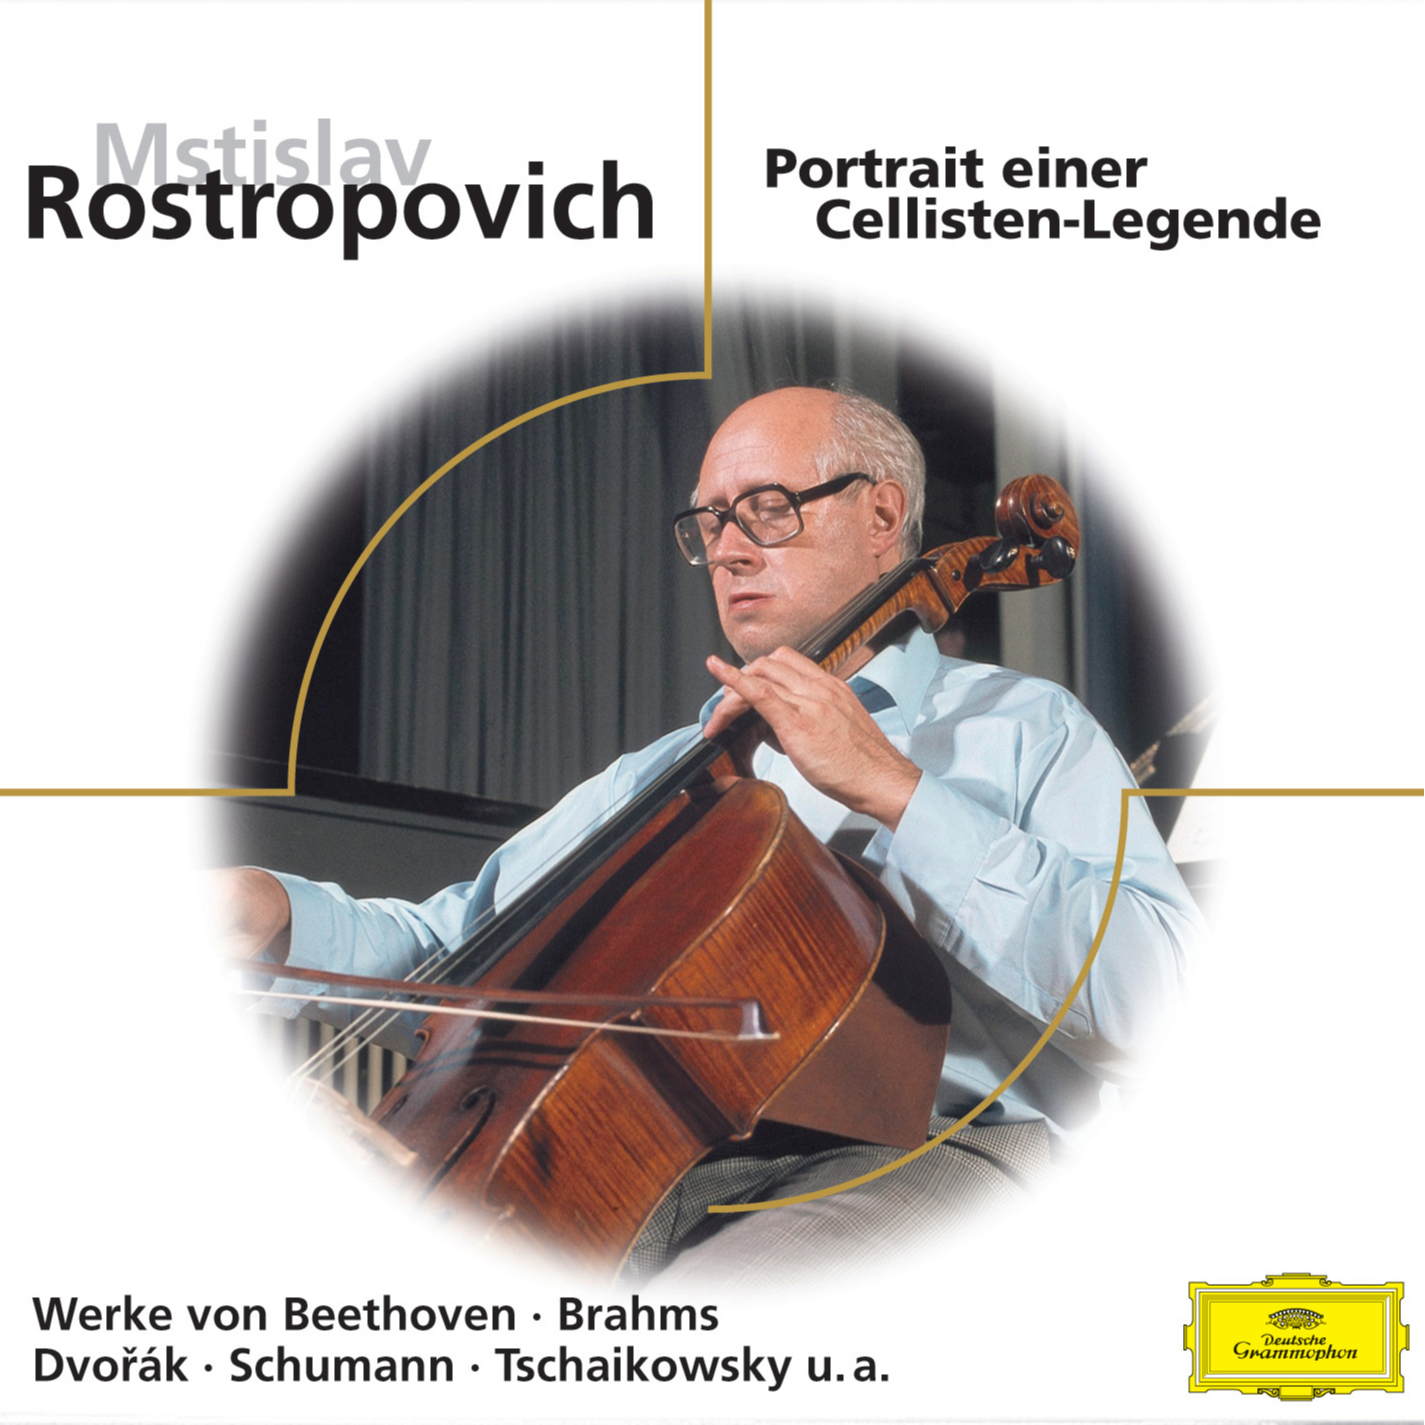 Rostropovich - Virtuose Cellowerke